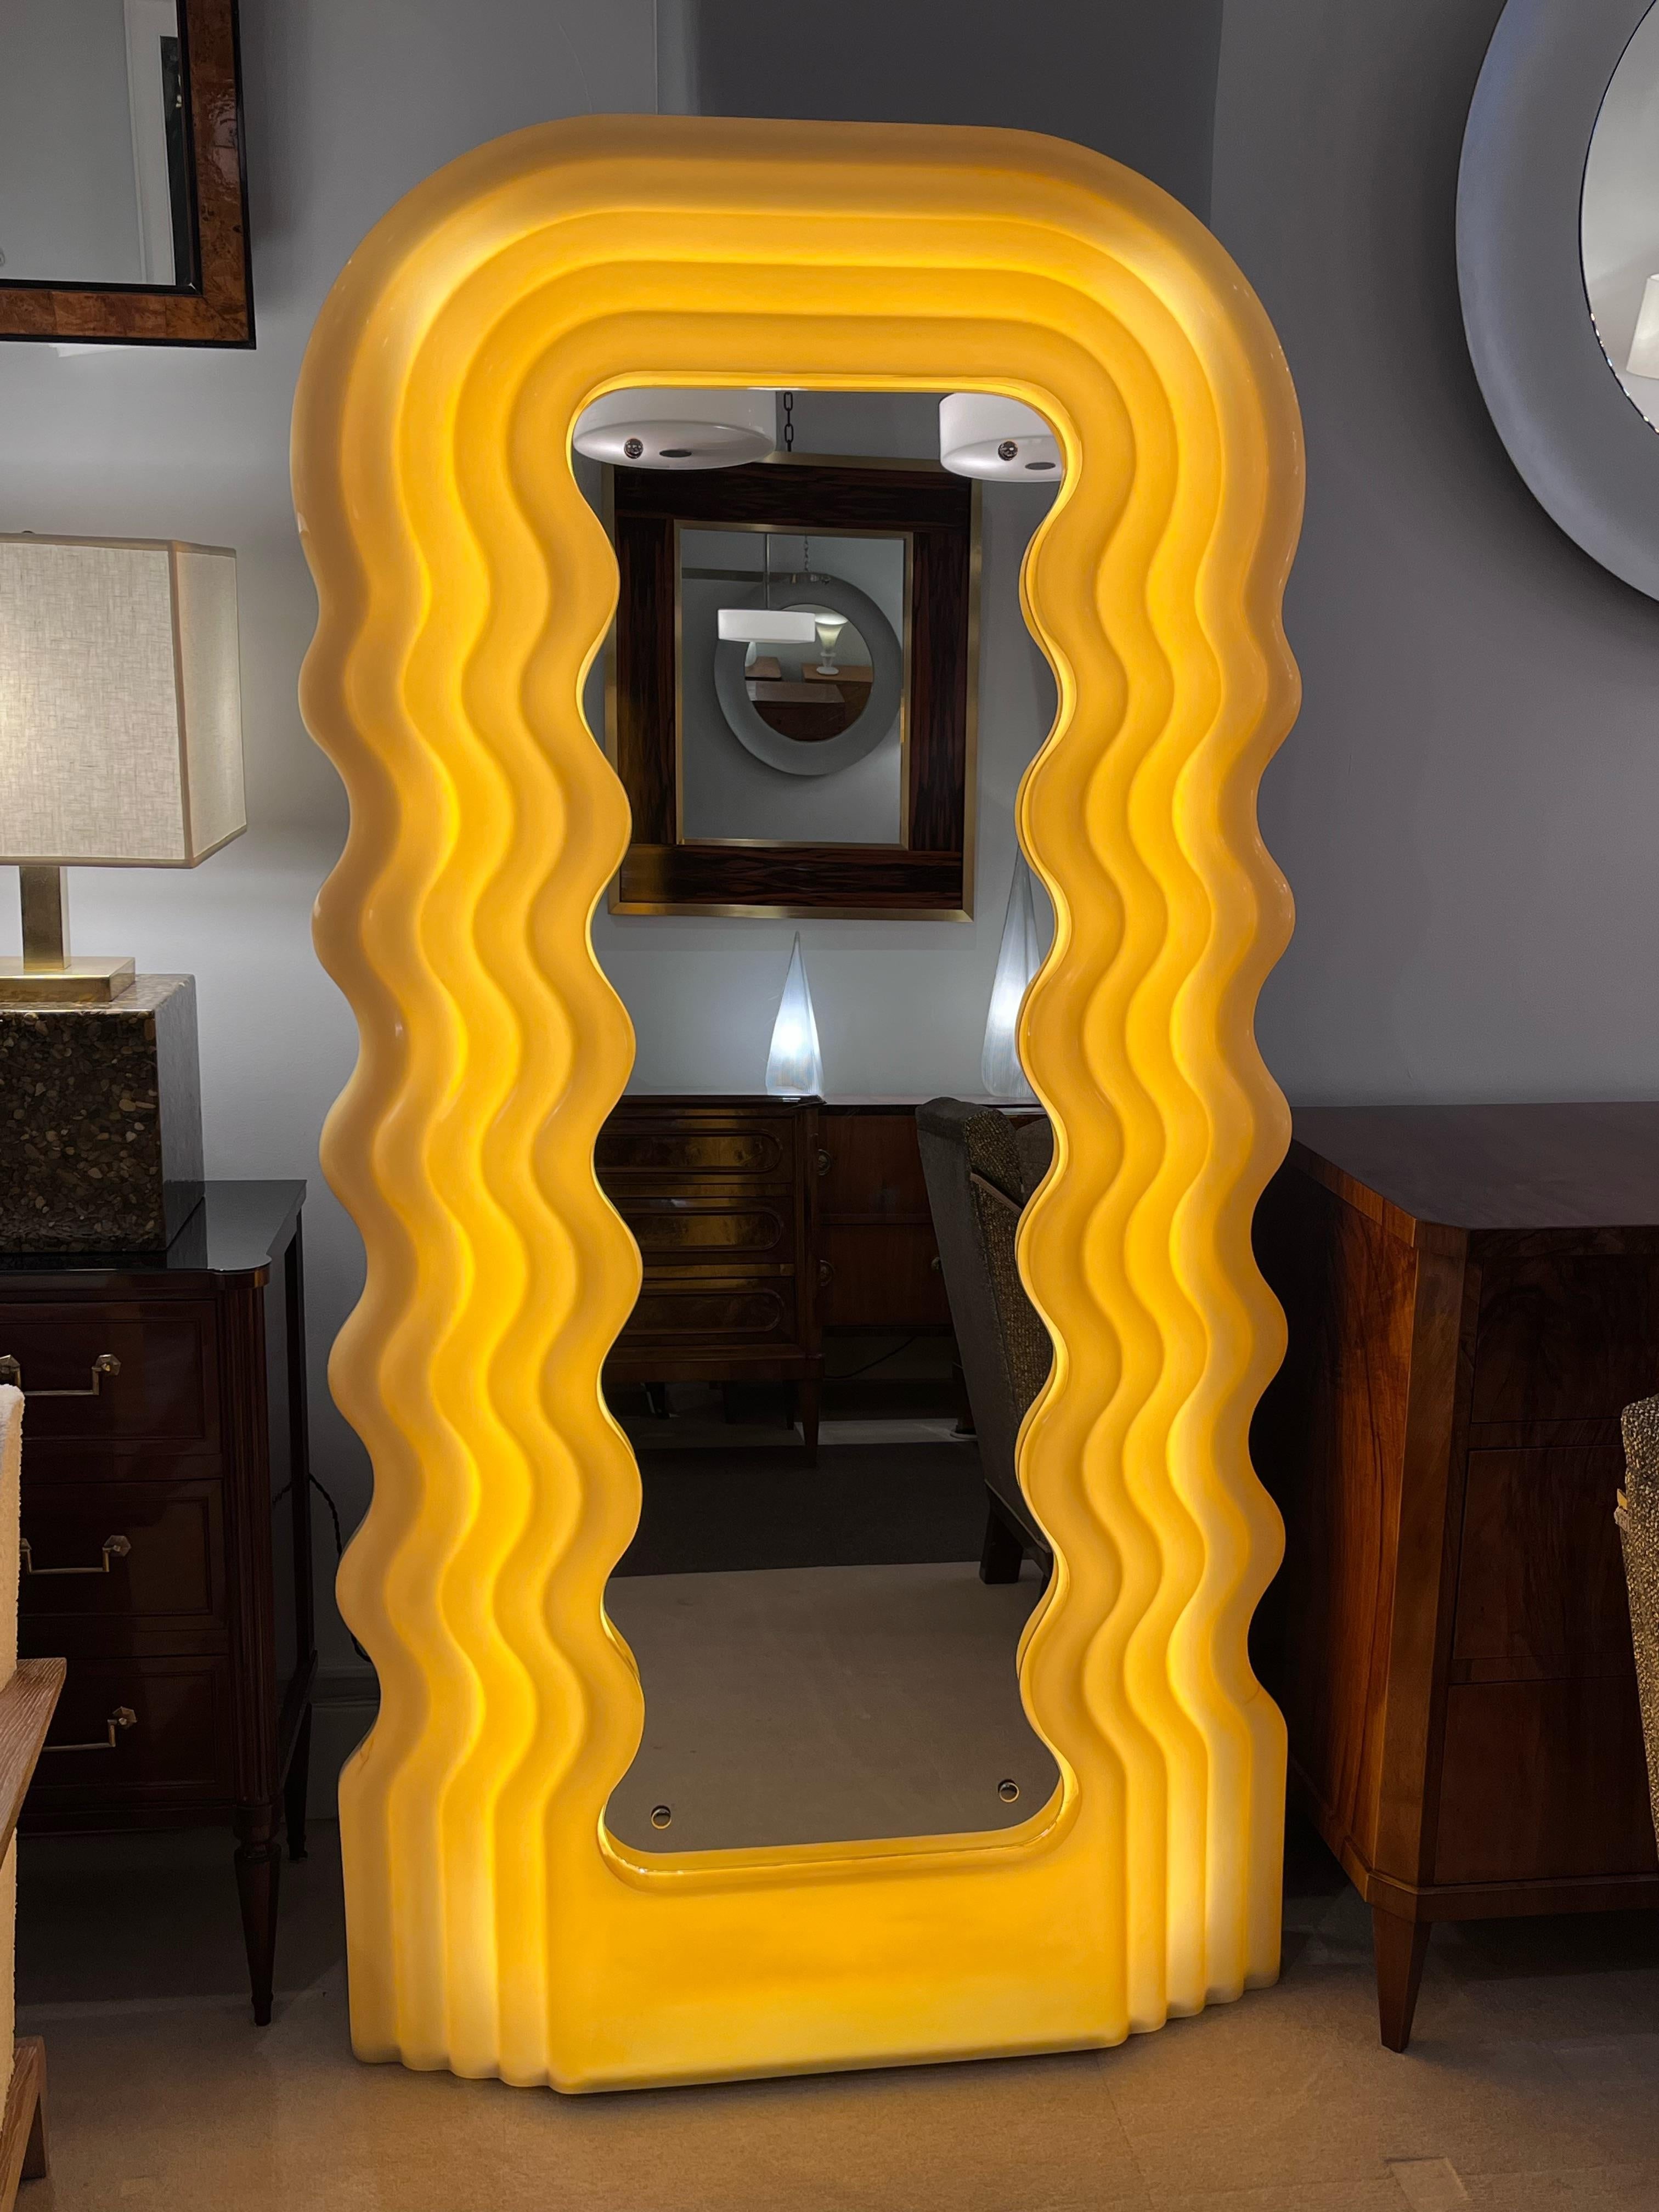 Originalmodell der 1. Auflage des Ultrafragola-Spiegels, entworfen von Ettore Sottsass für Poltronova. Beleuchteter Spiegel mit einer Acrylschale aus geschichteten Wellen um den zentralen Spiegel, der das gleiche Wellendesign nachahmt.